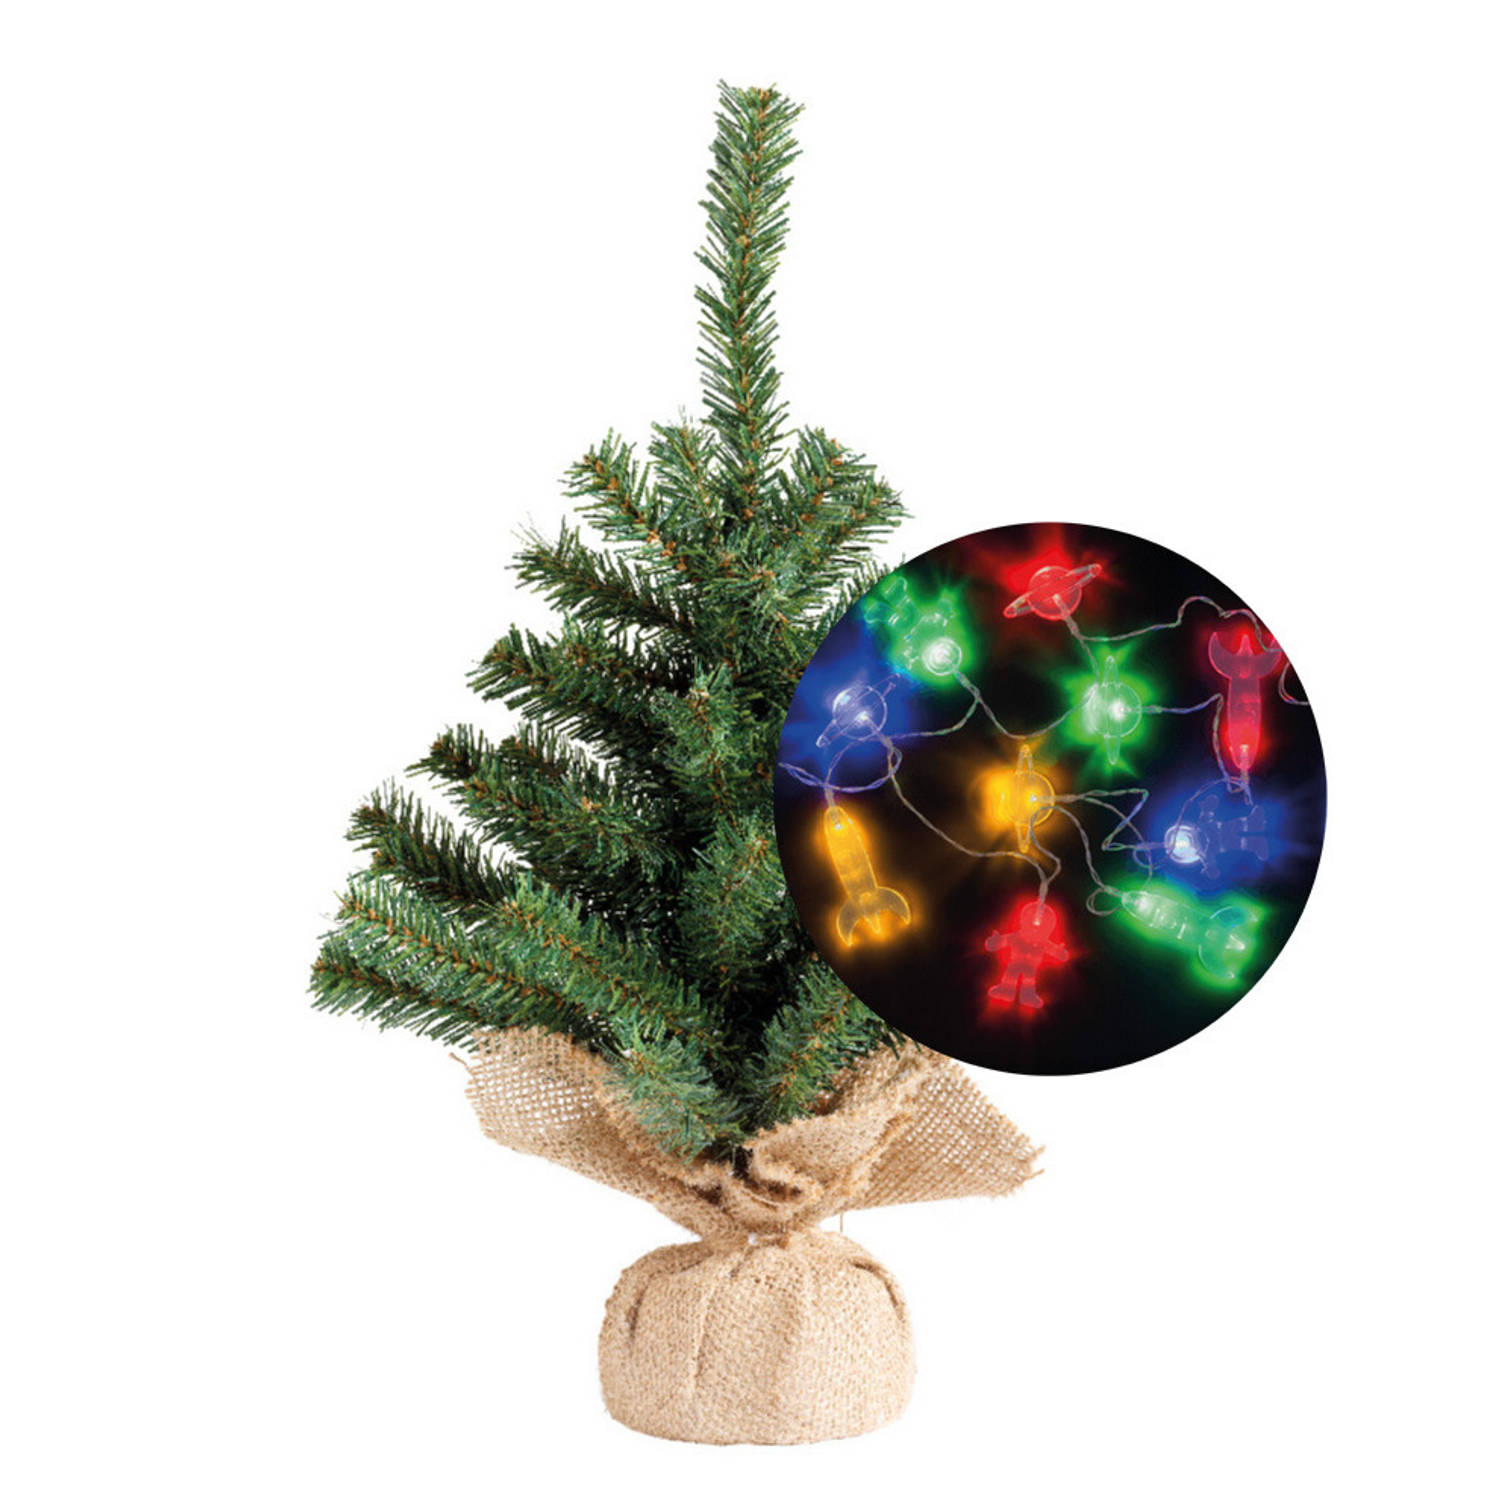 Kerstboom 35 cm incl. ruimte-space verlichting snoer 165 cm Kunstkerstboom